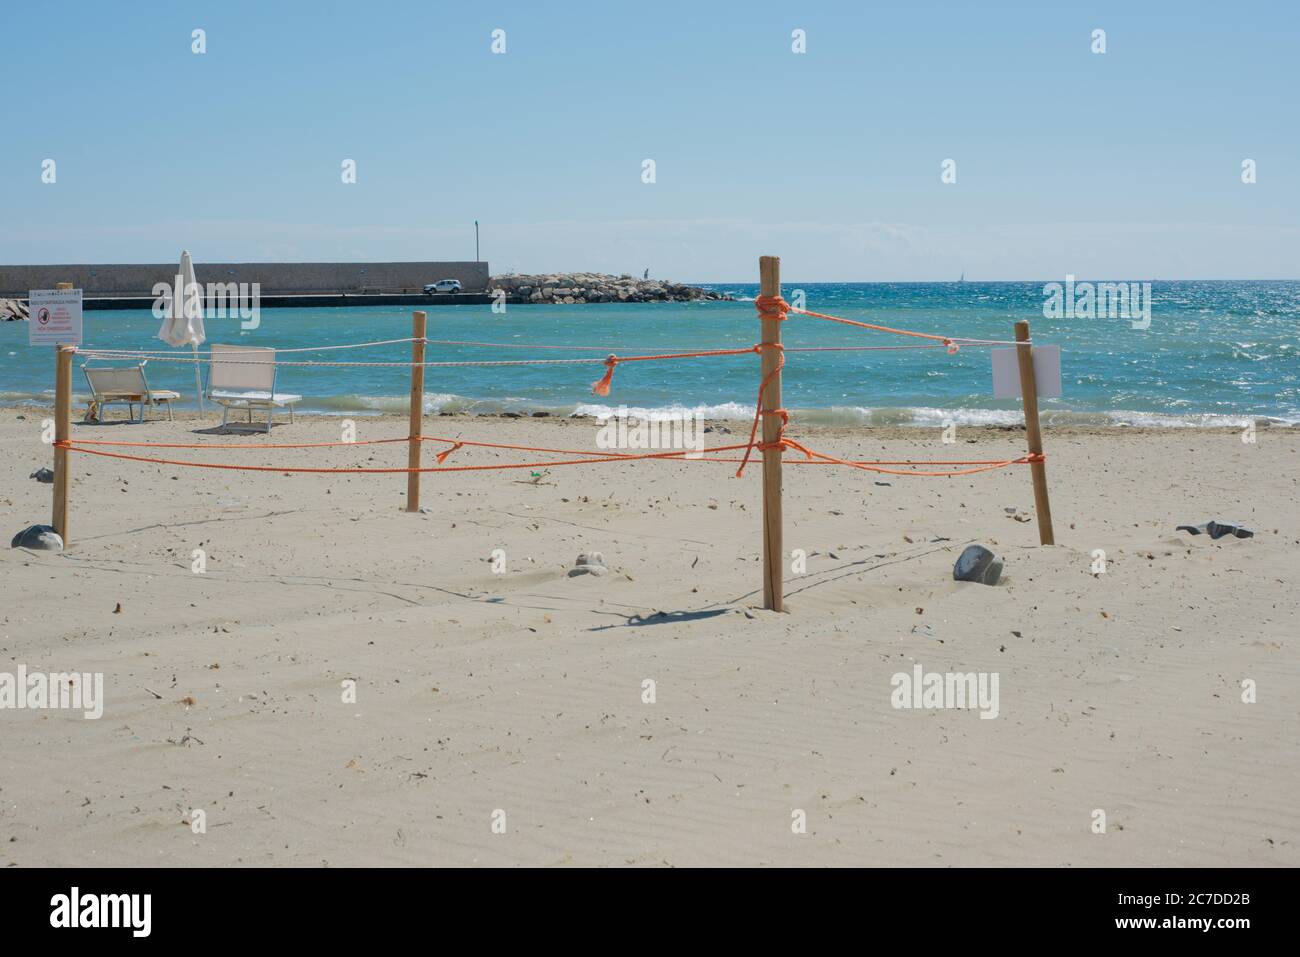 Un nido di tartarughe che si trova sulla spiaggia di Casal Velino Marina in provincia di Salerno. Foto Stock